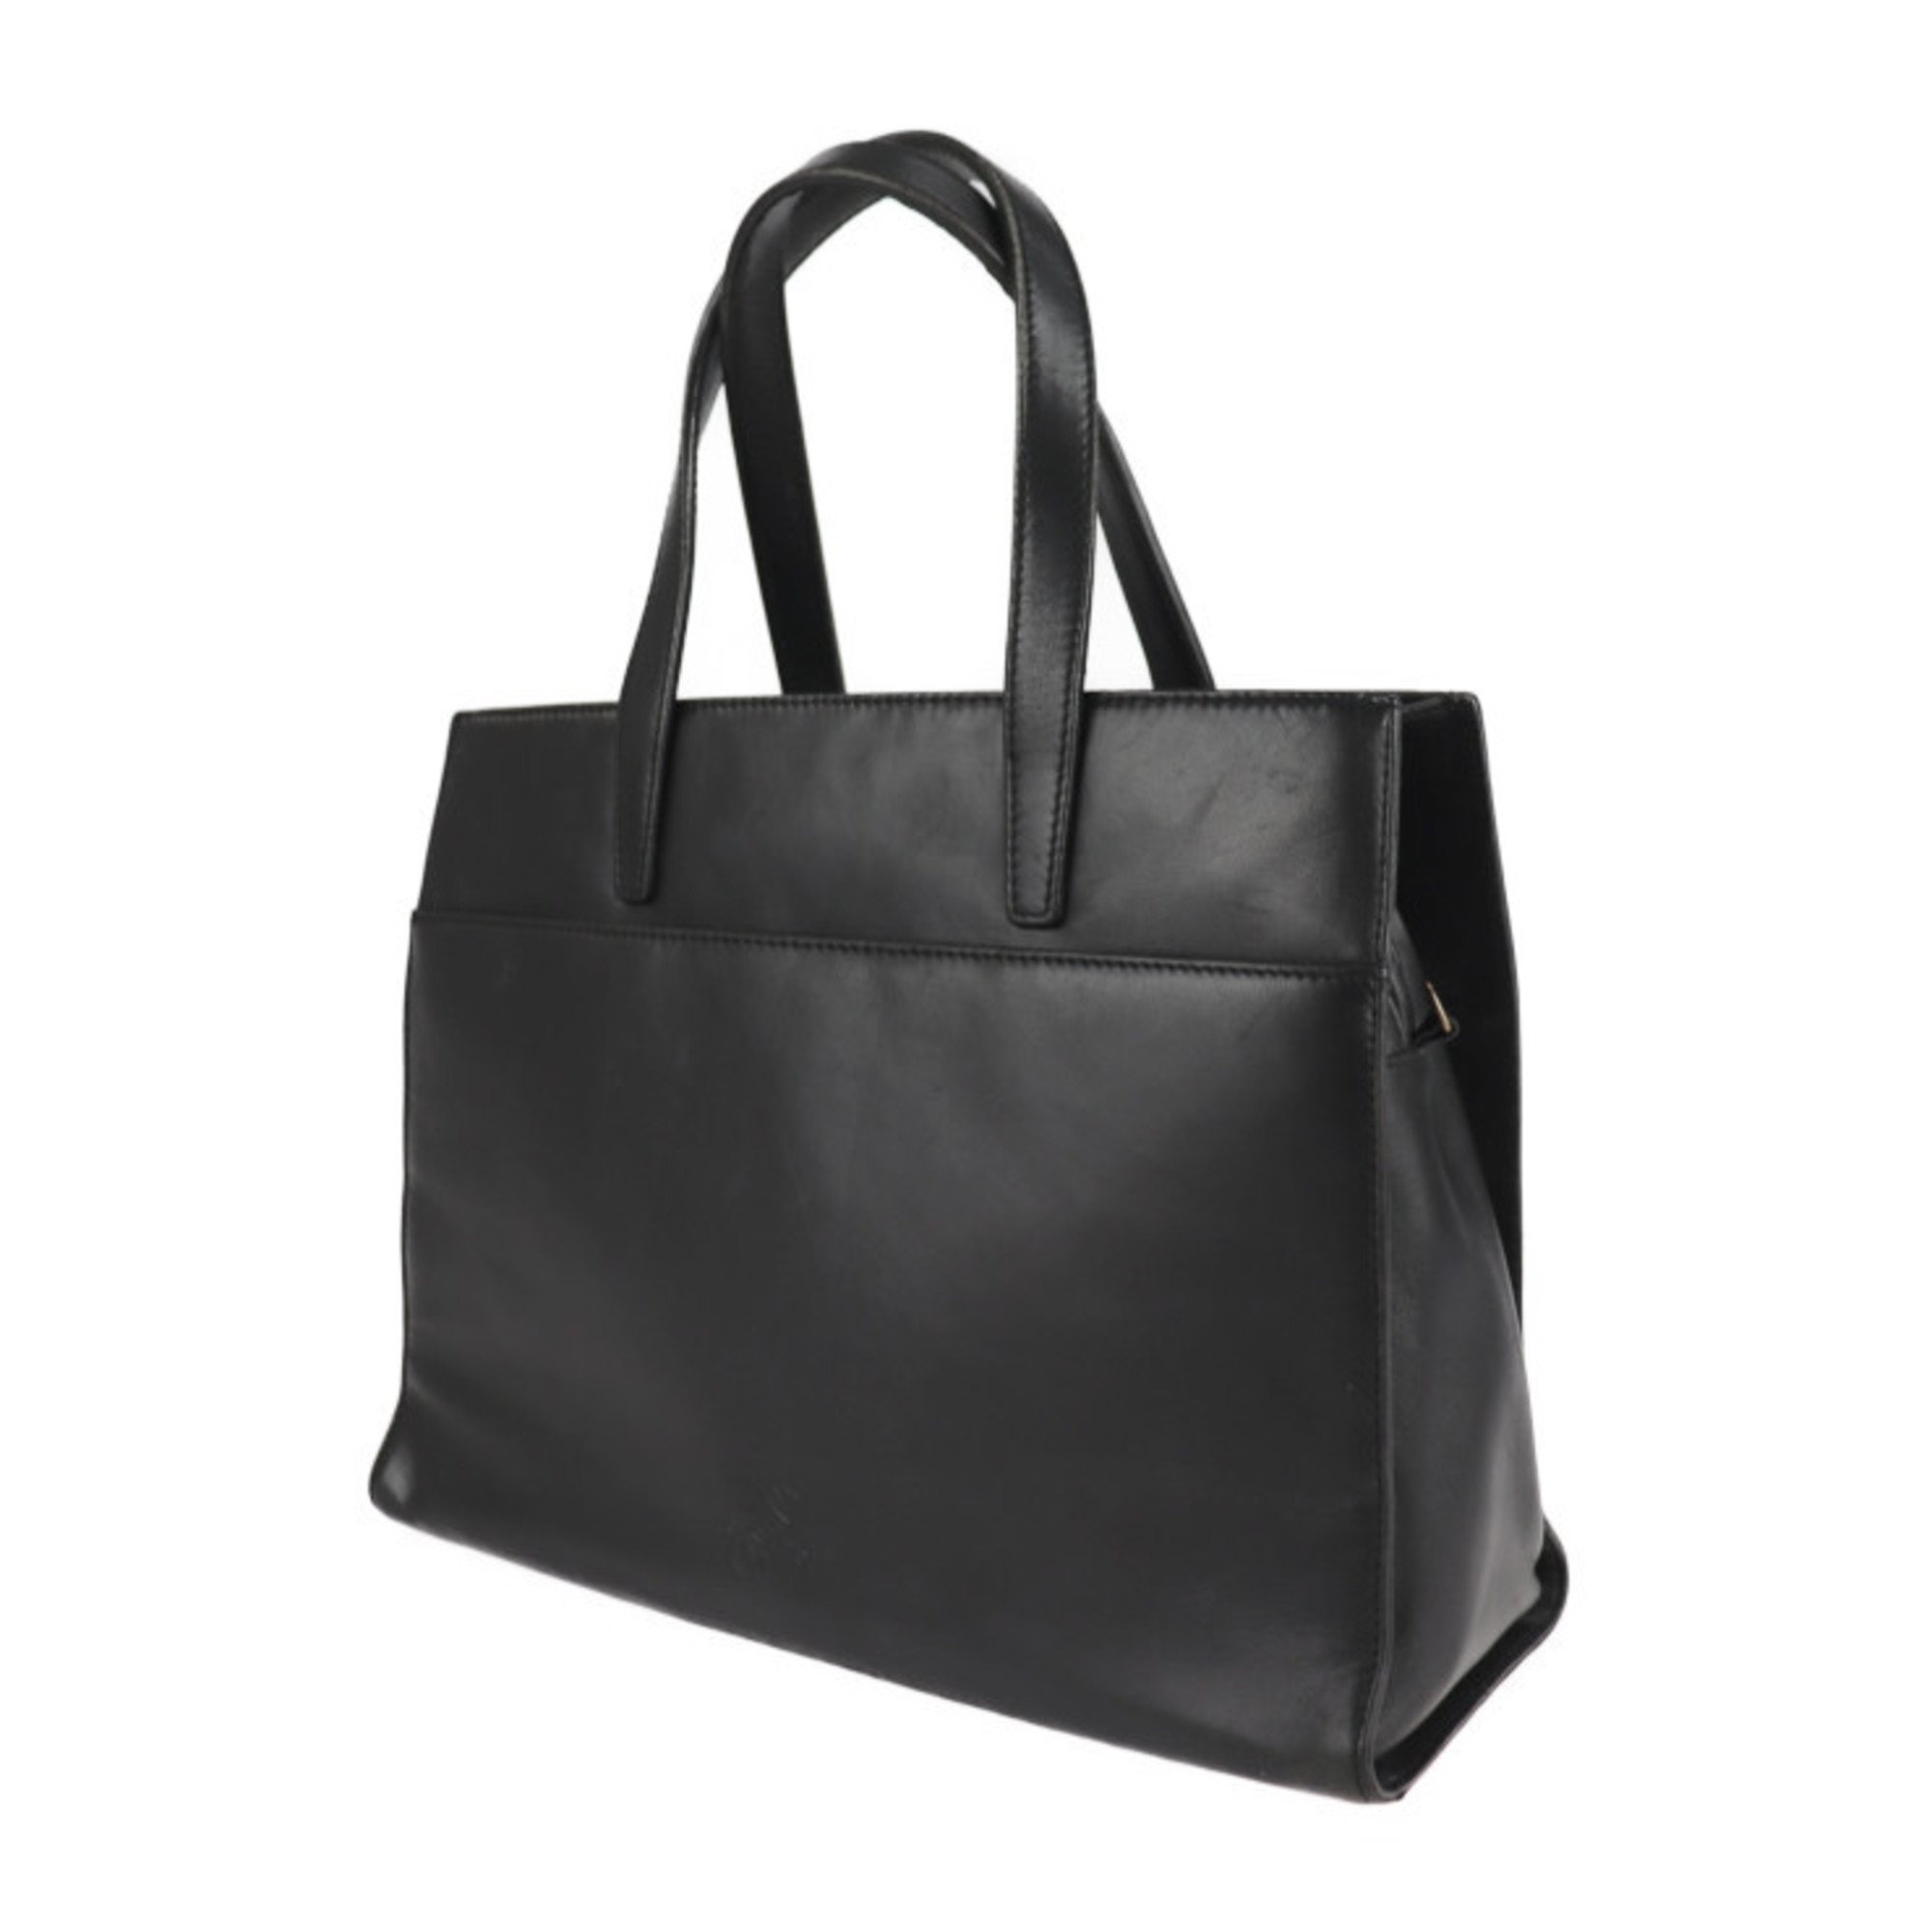 LOEWE Loewe handbag leather black gold metal fittings 2WAY shoulder bag tote